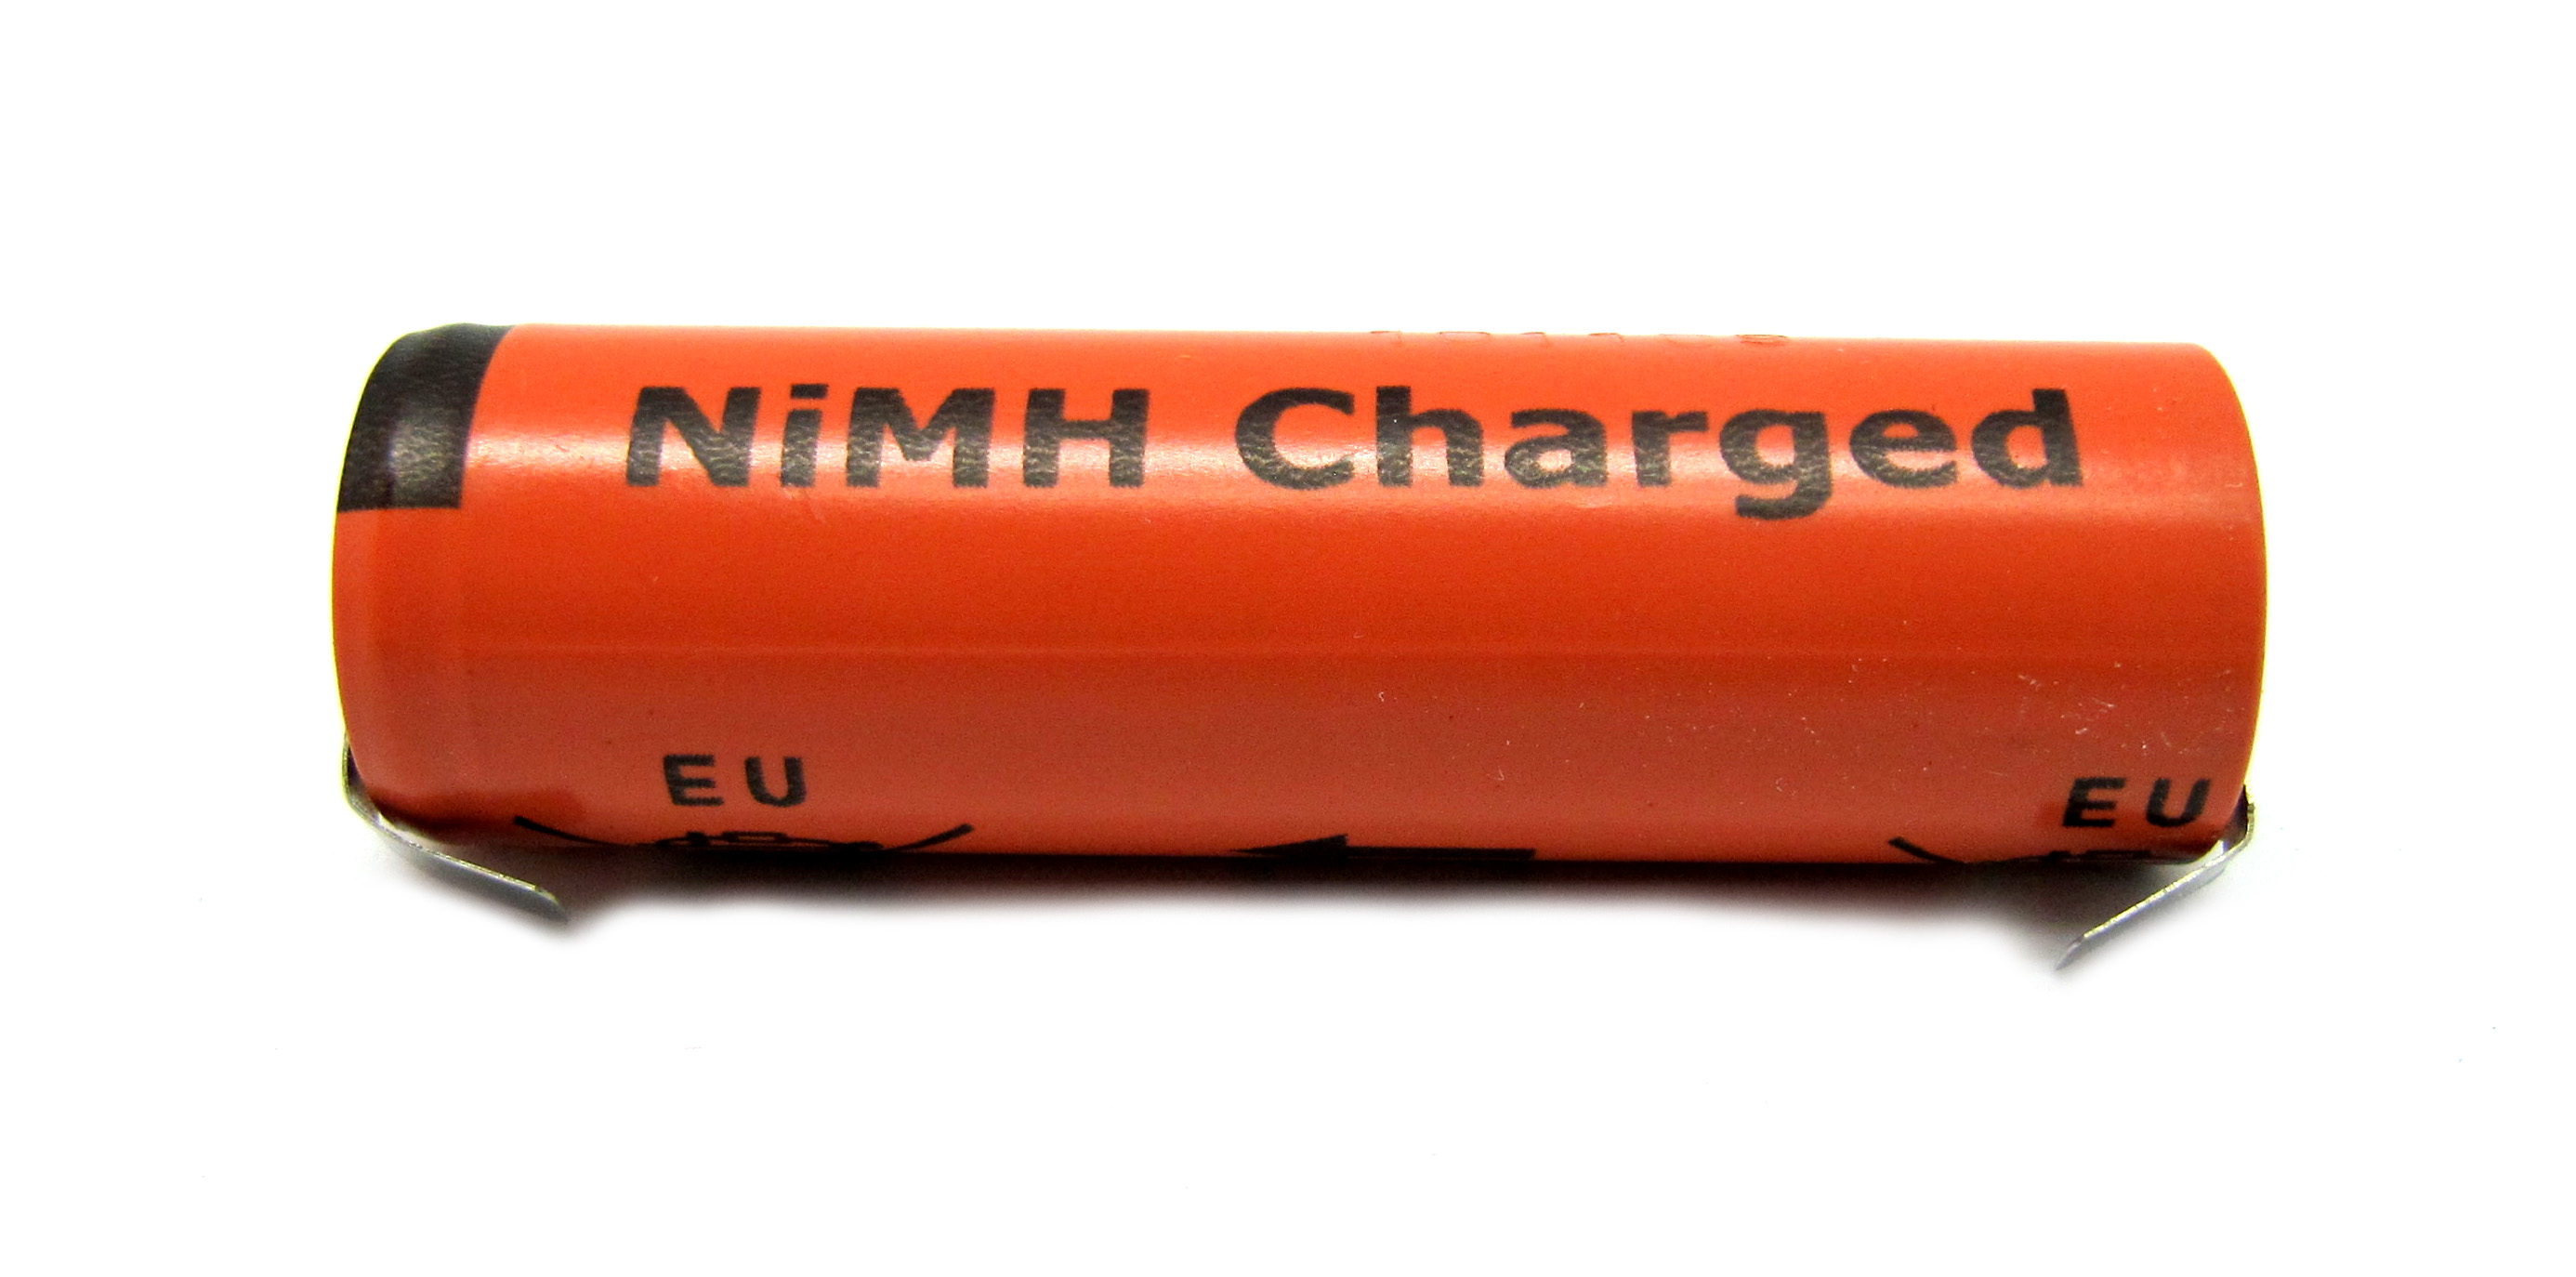 Bateria recargable 5cm x 1,2 diametro - 422203613480 - PHILIPS